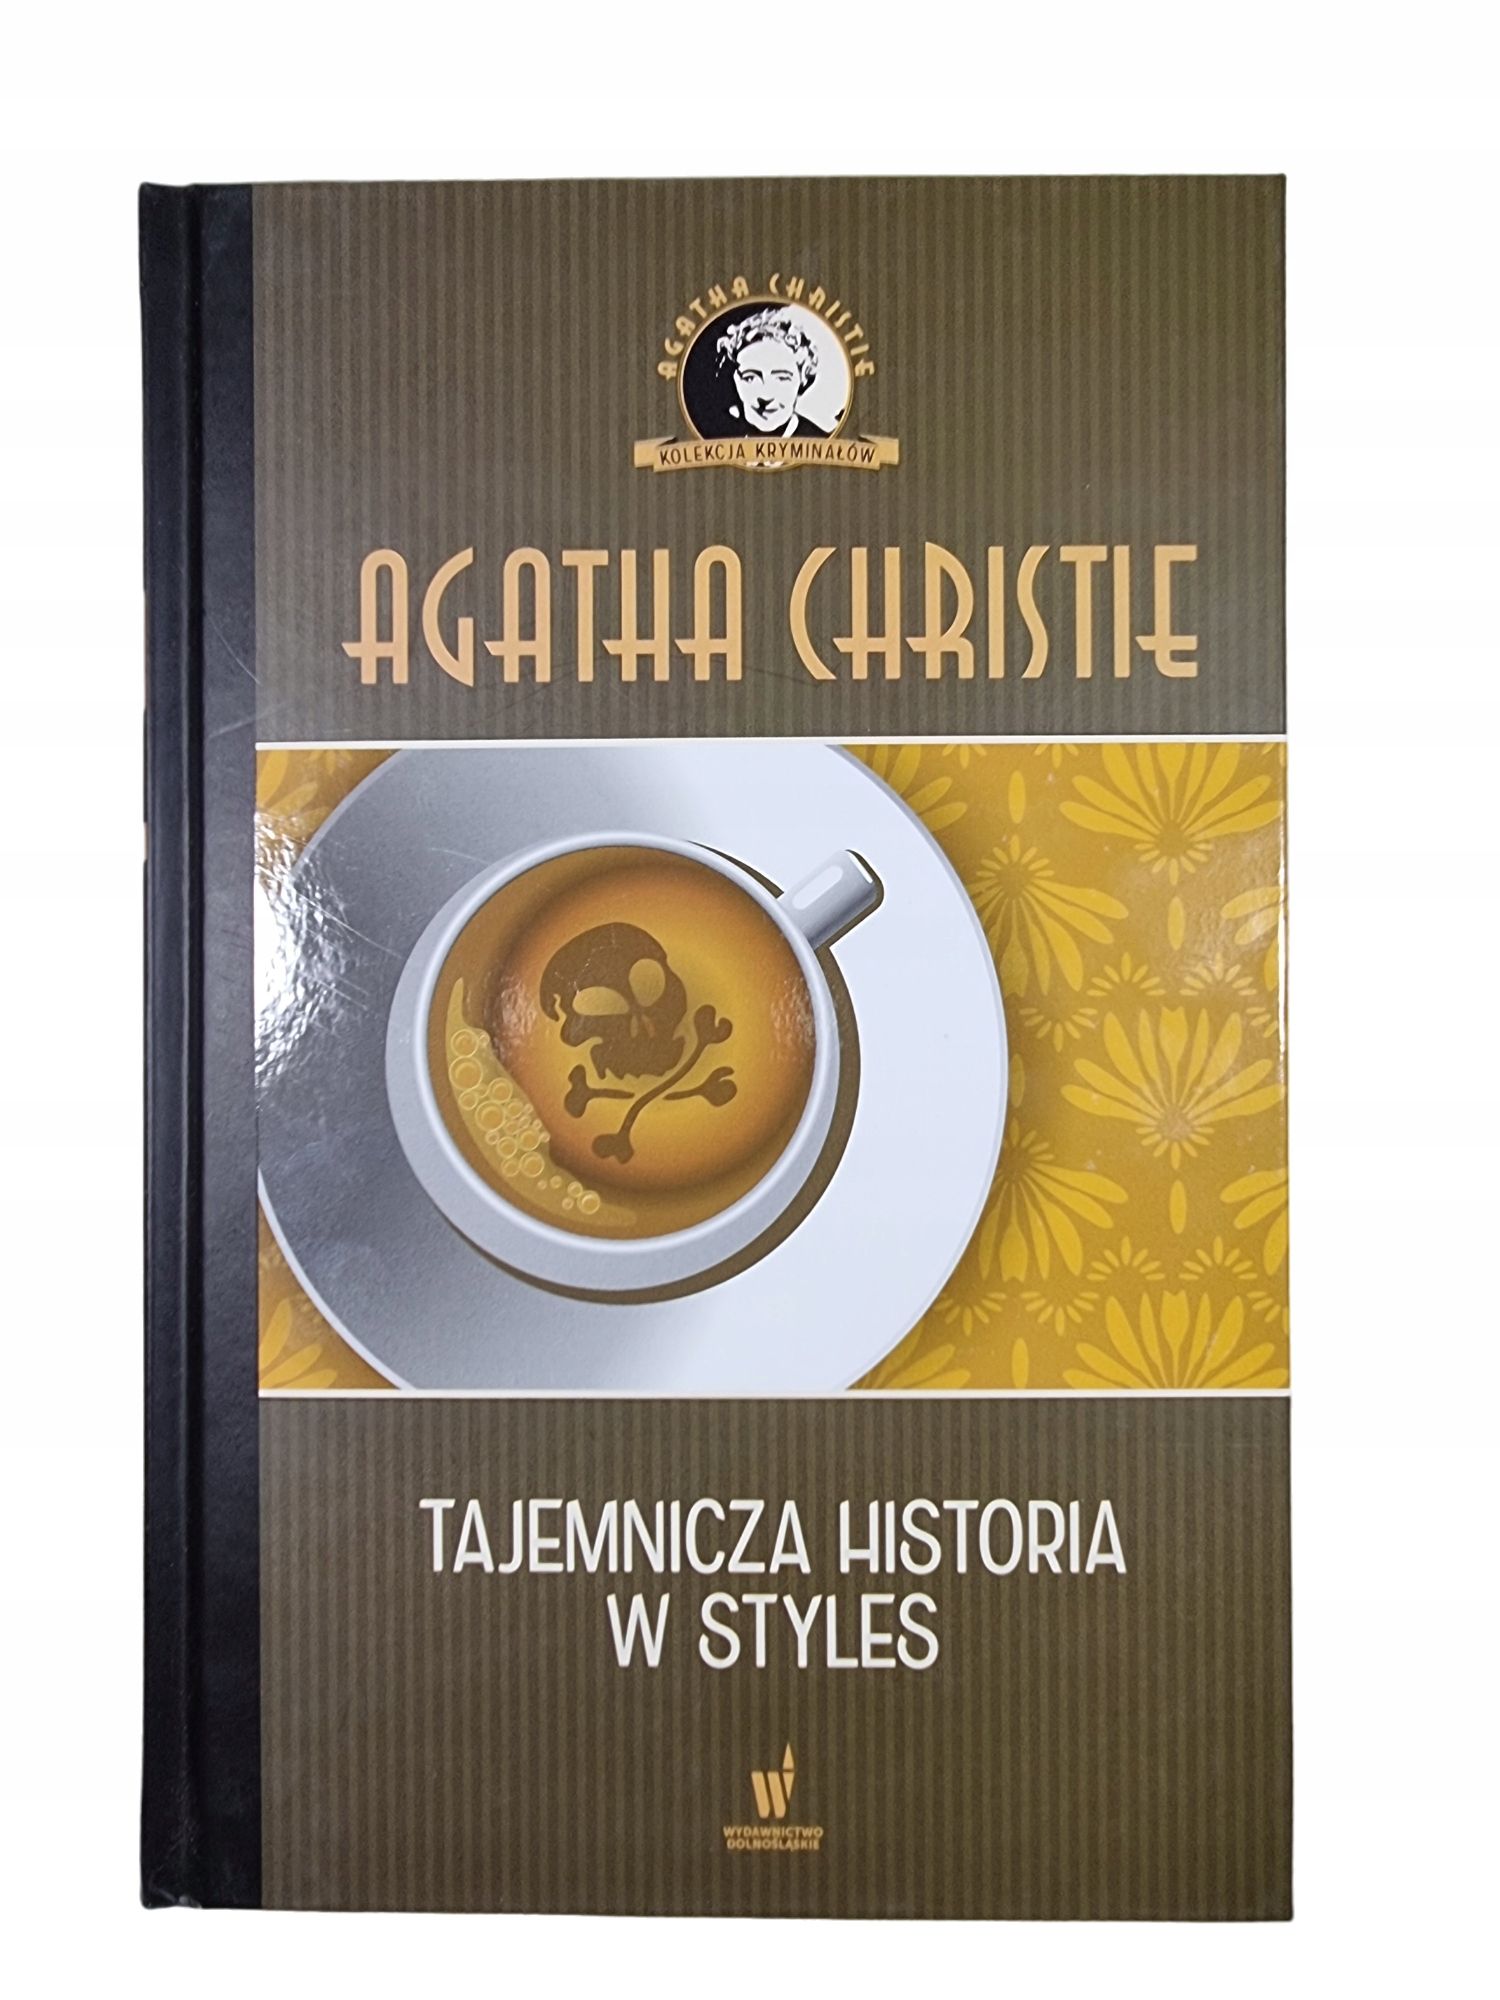 Tajemnicza Historia w Styles / Tom 12 / Agatha Christie